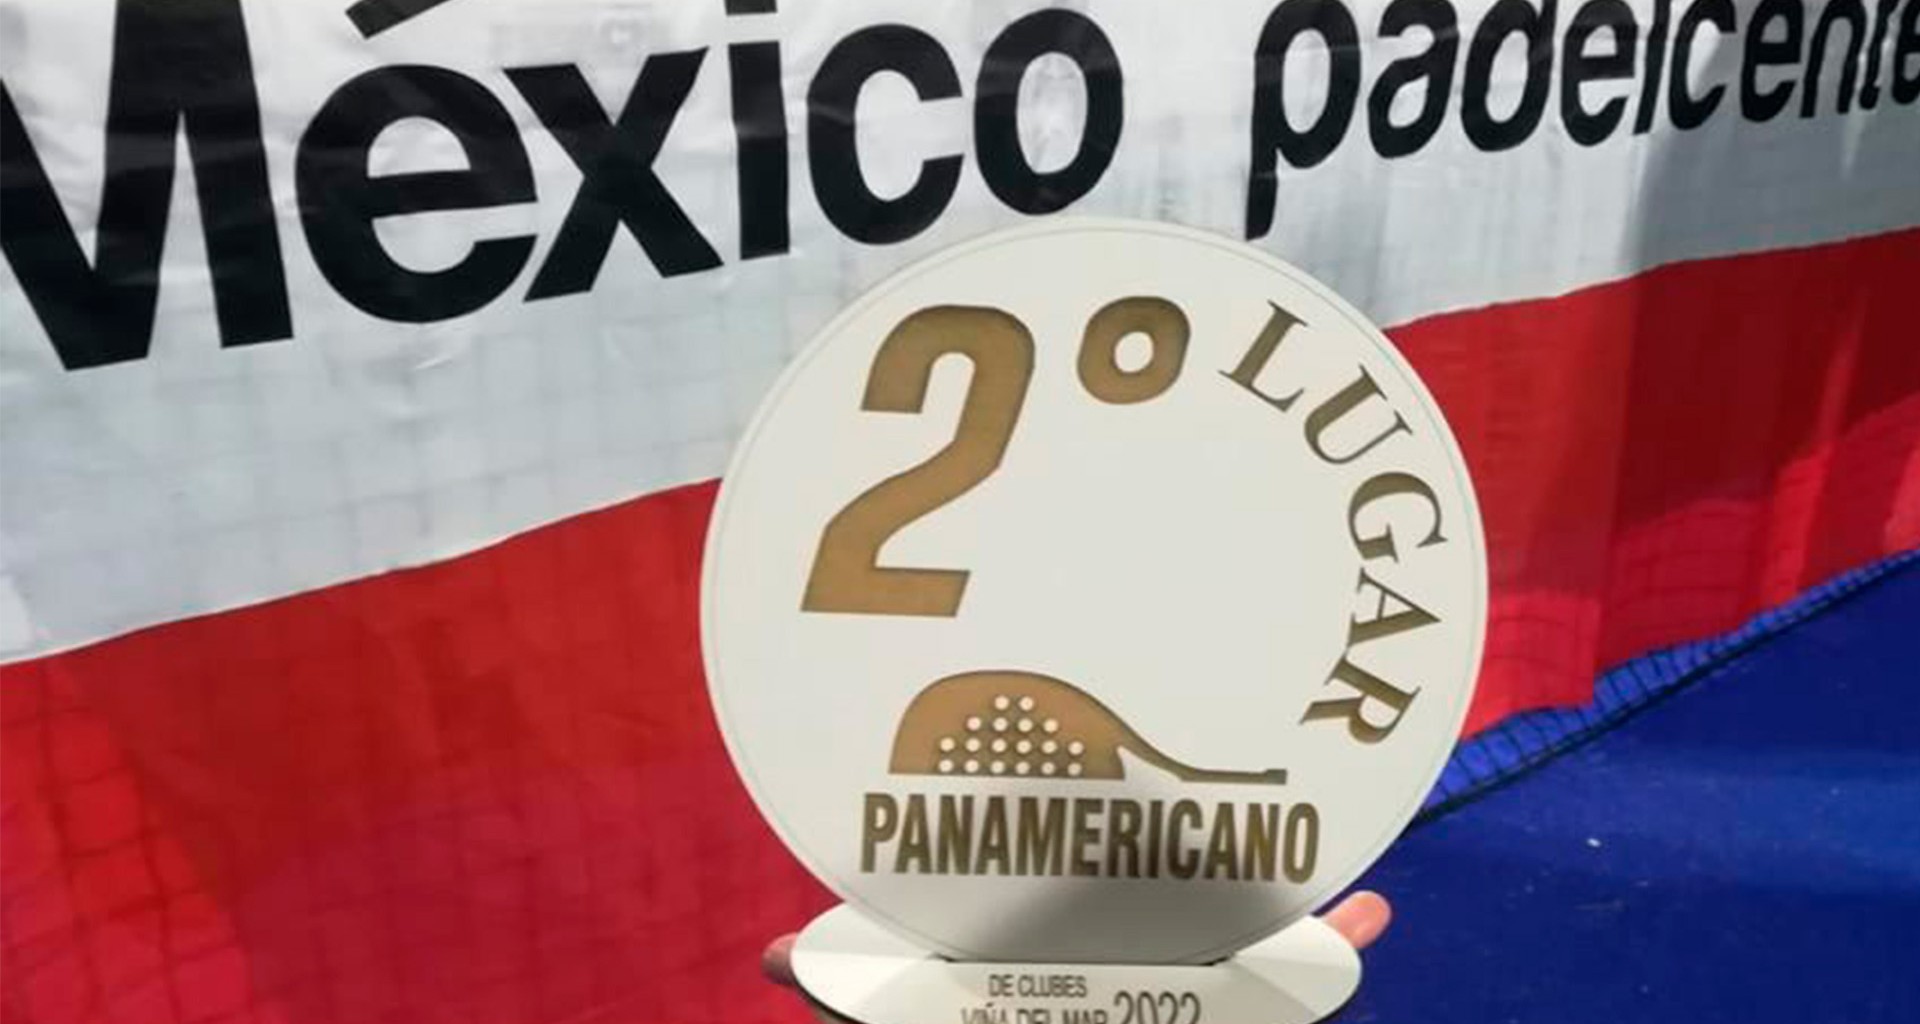 ¡Plata en Pádel! Alumno Tec destaca en panamericano deportivo en Chile